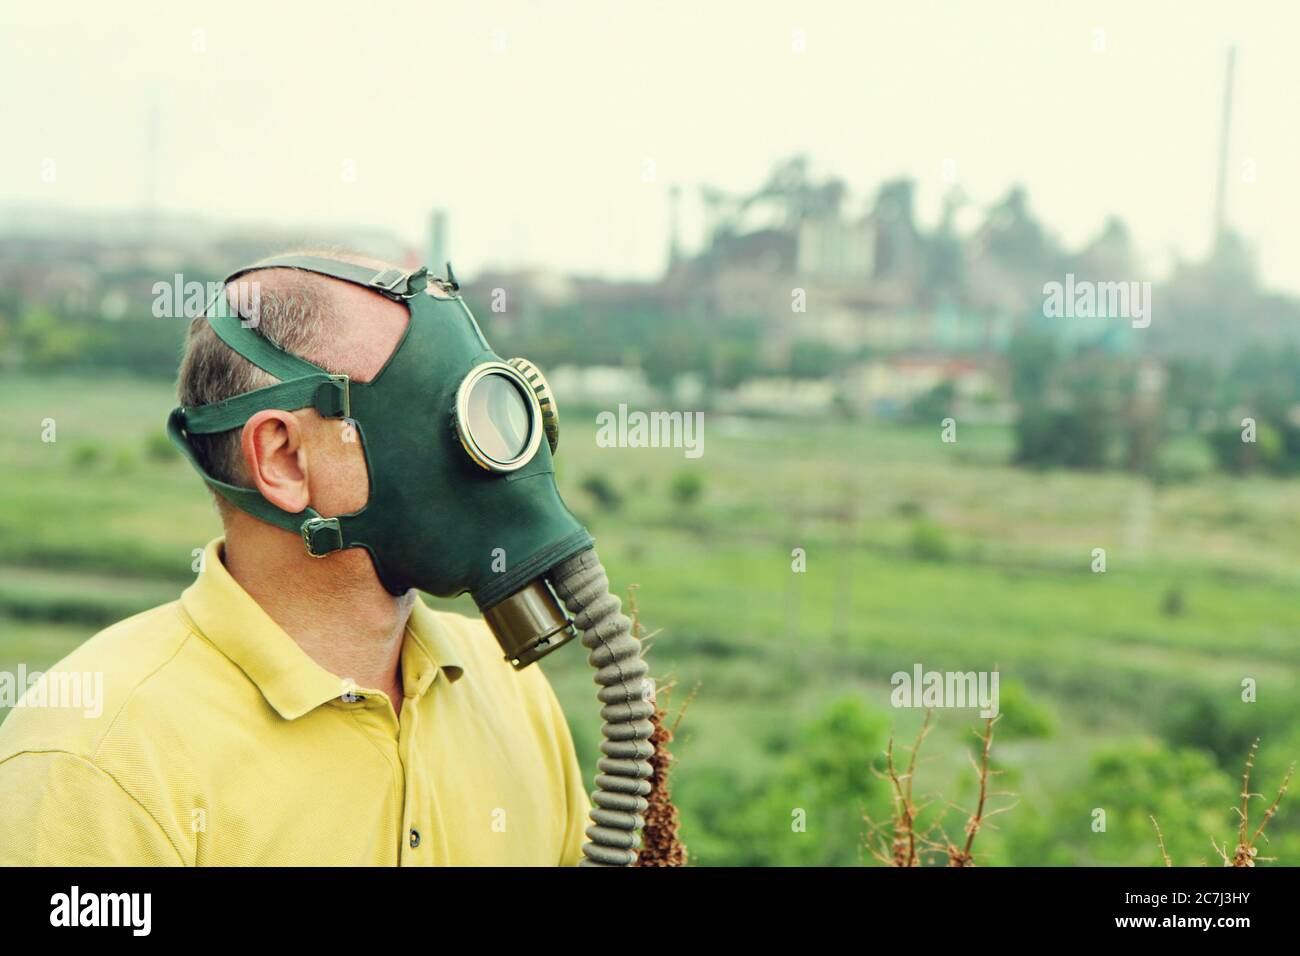 Personne portant un masque à gaz sur un fond industriel. Image de style rétro. Banque D'Images